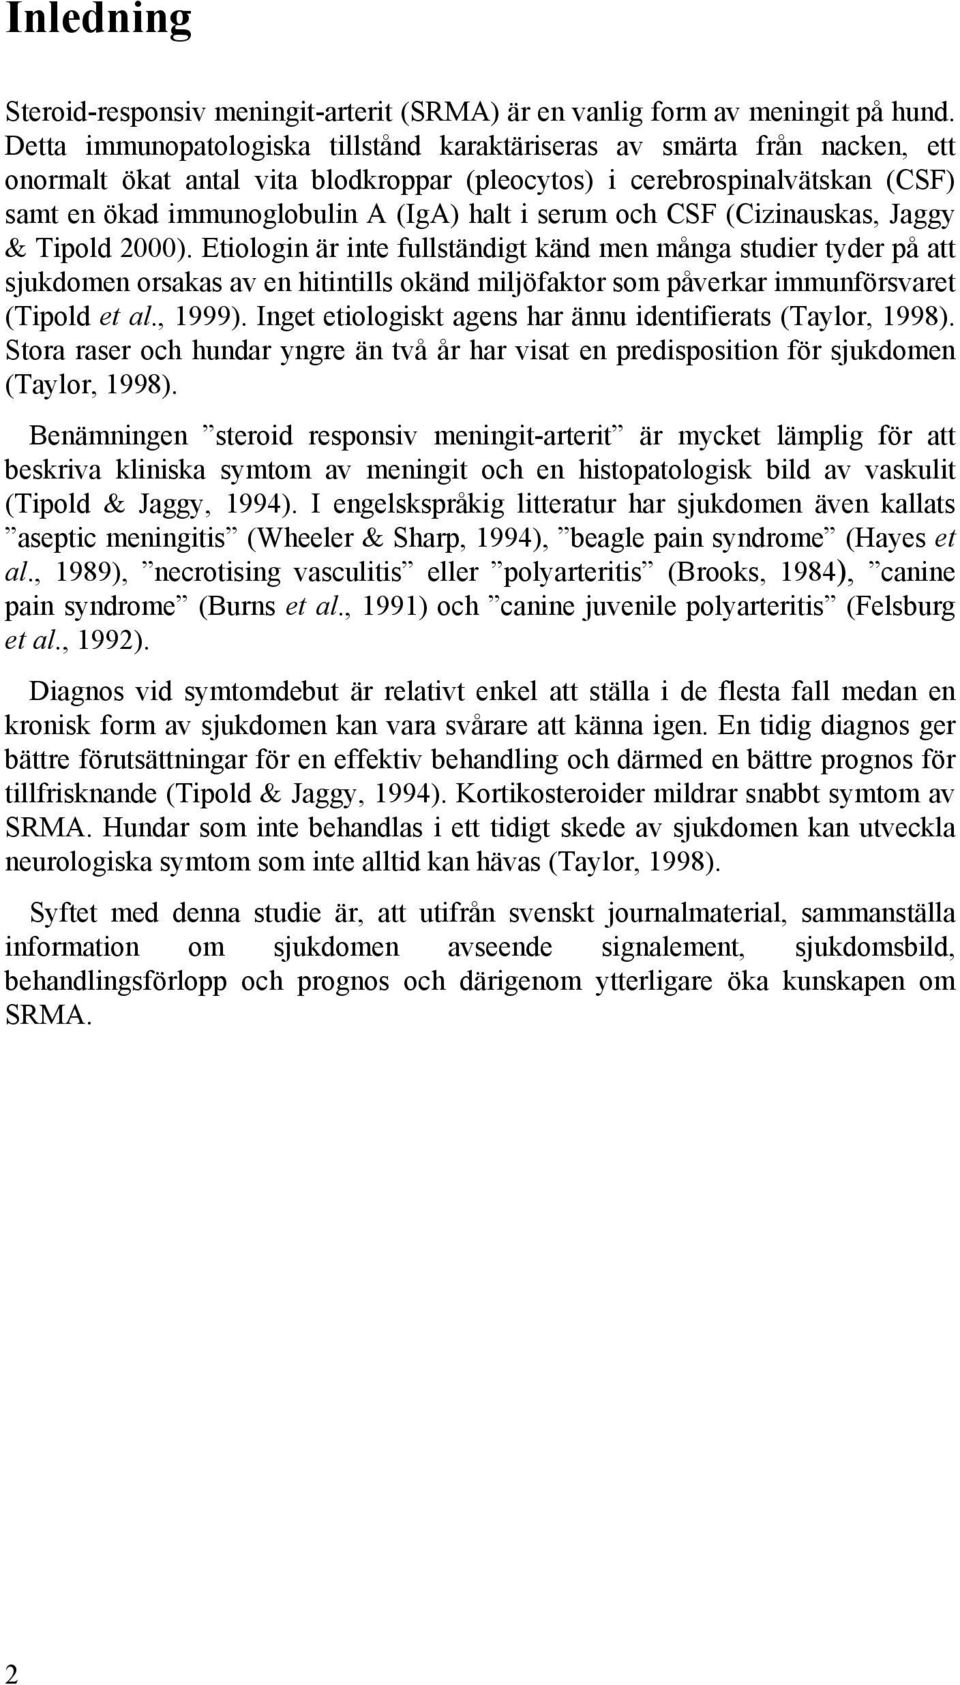 serum och CSF (Cizinauskas, Jaggy & Tipold 2000).